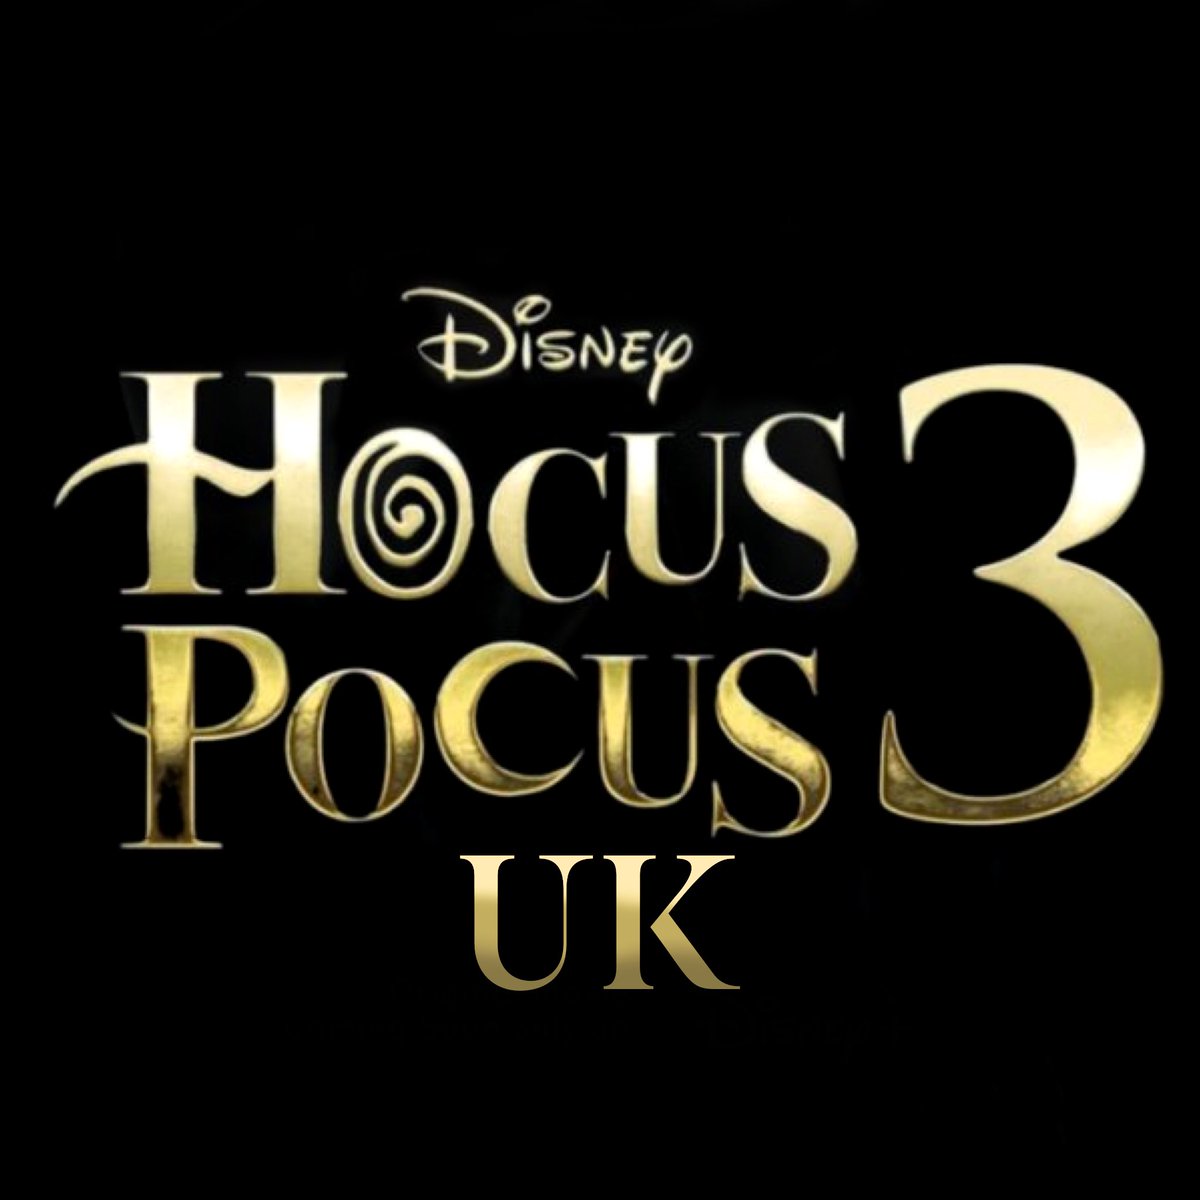 Hocus Pocus 3. #HocusPocus3